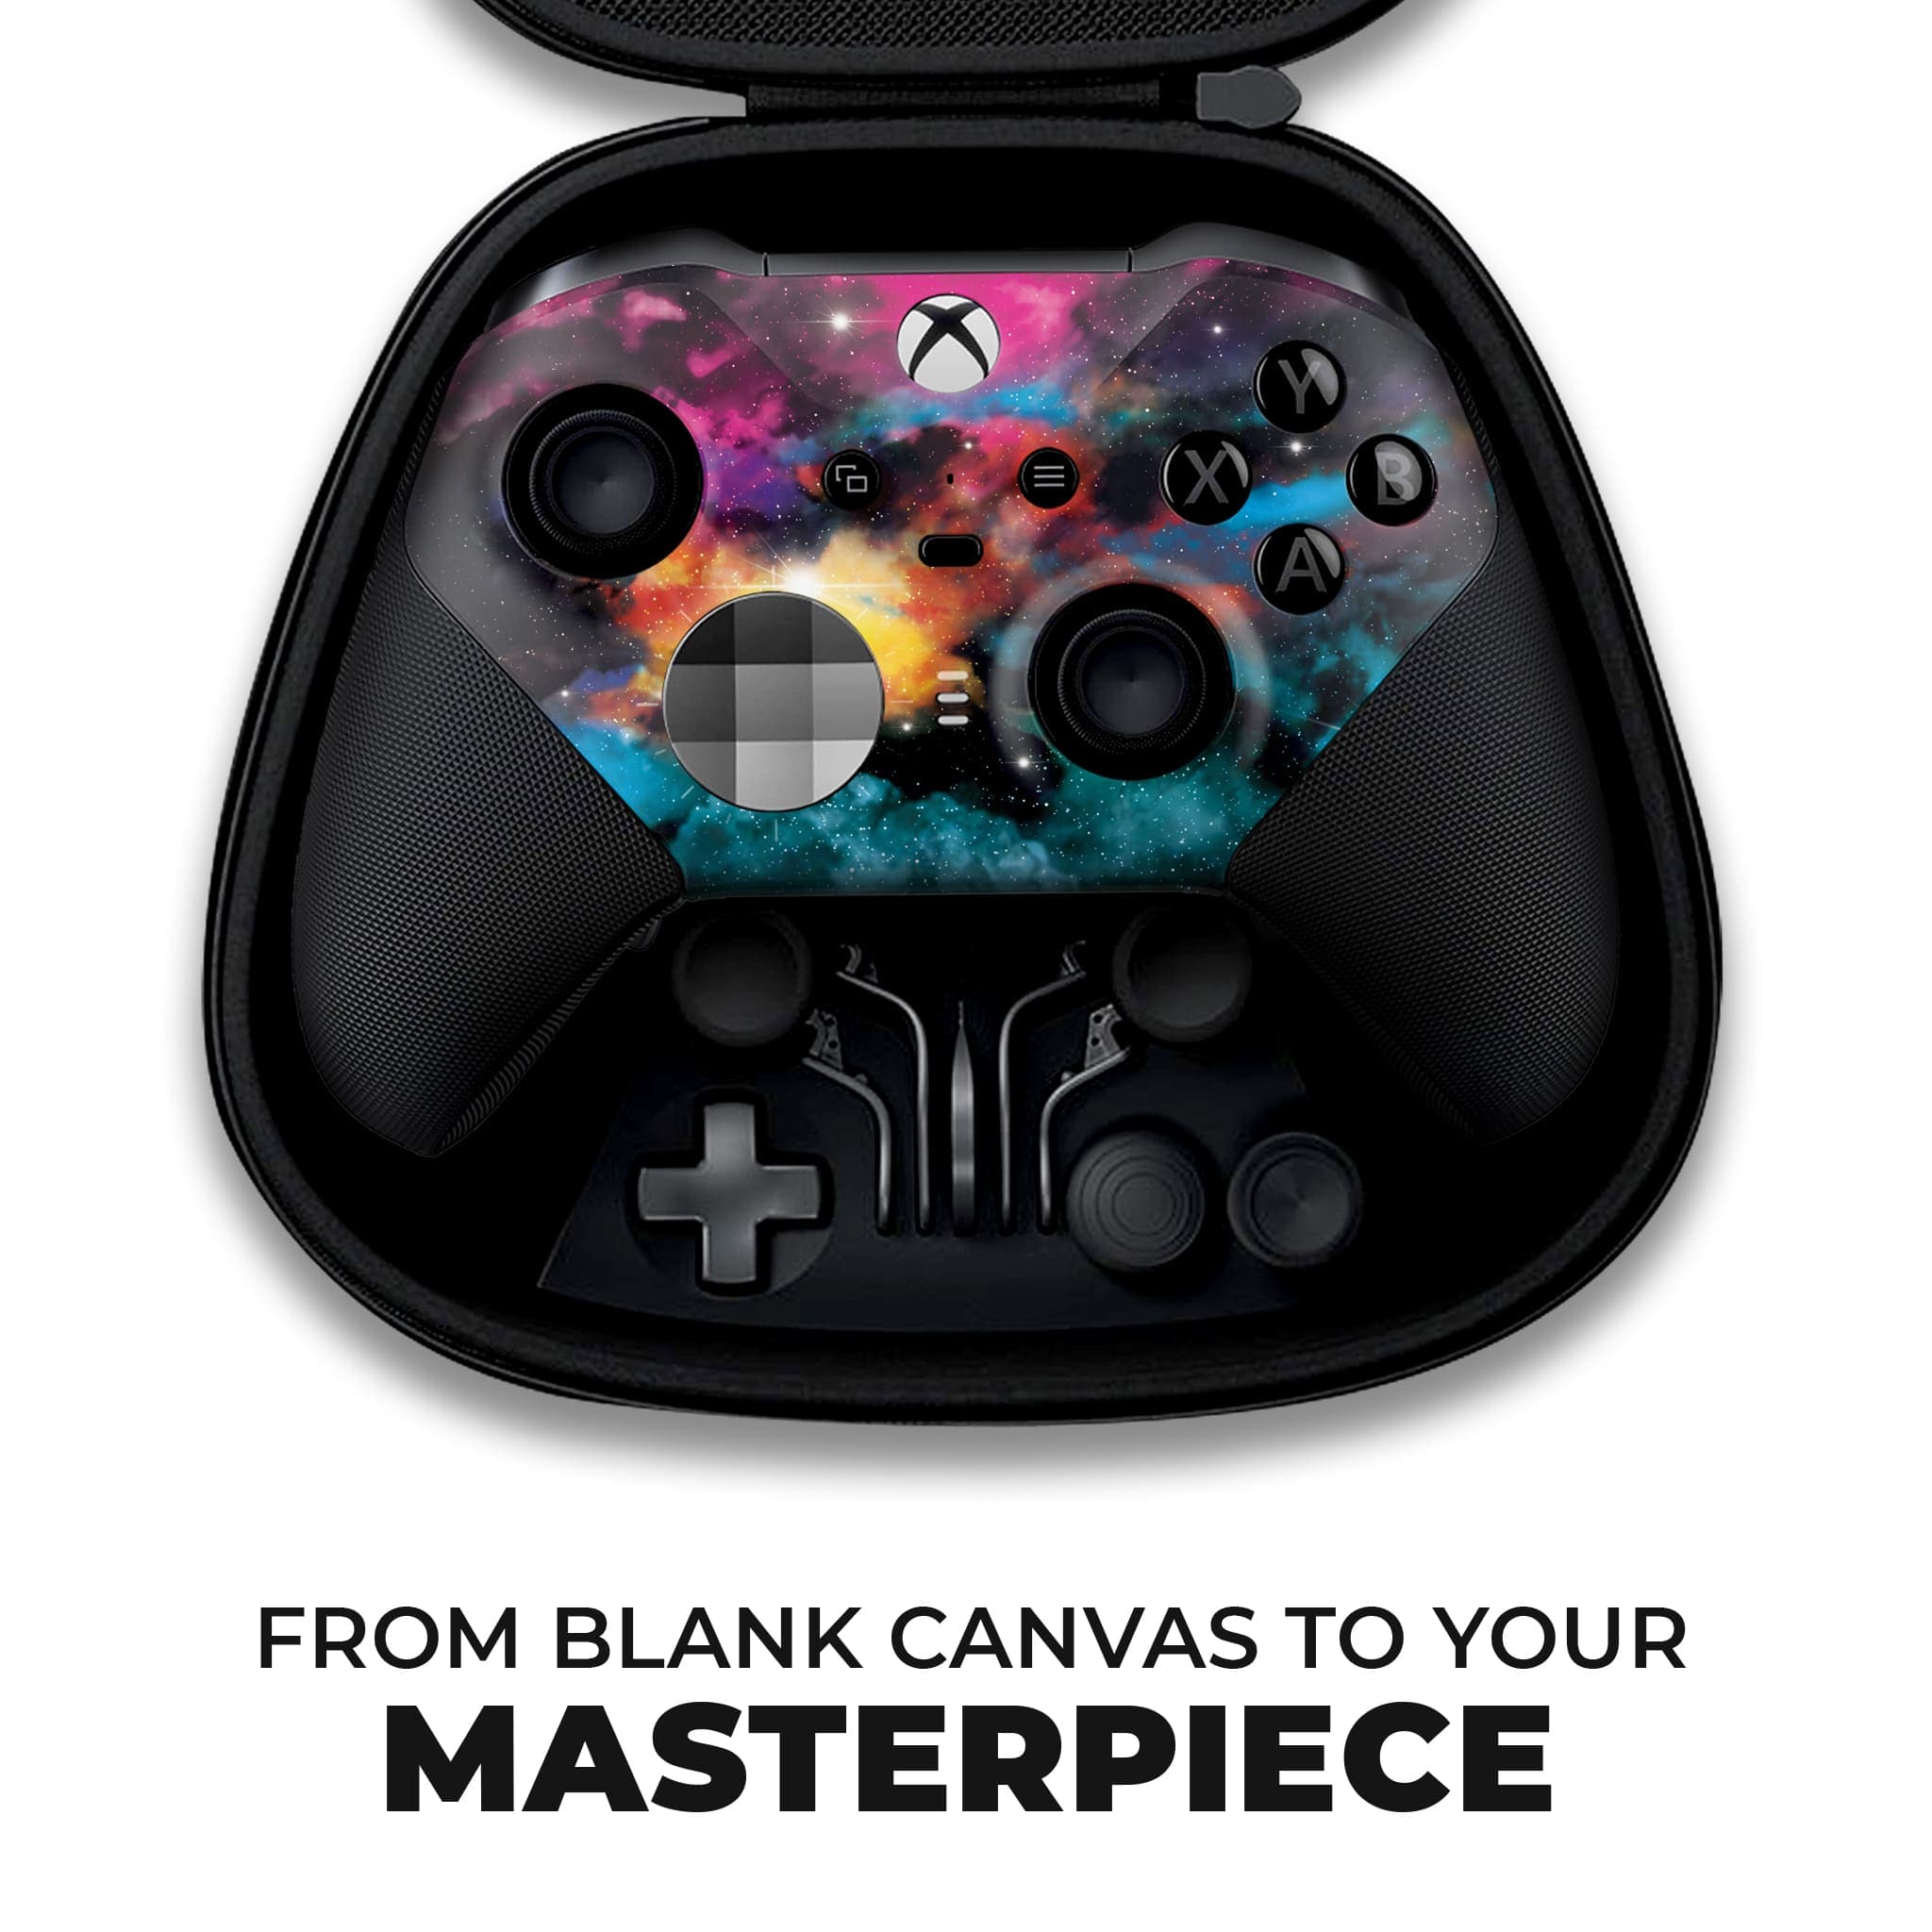 Galaxy Xbox Elite Series 2 Controller: Xbox Elite Wireless Controller - Dream Controller